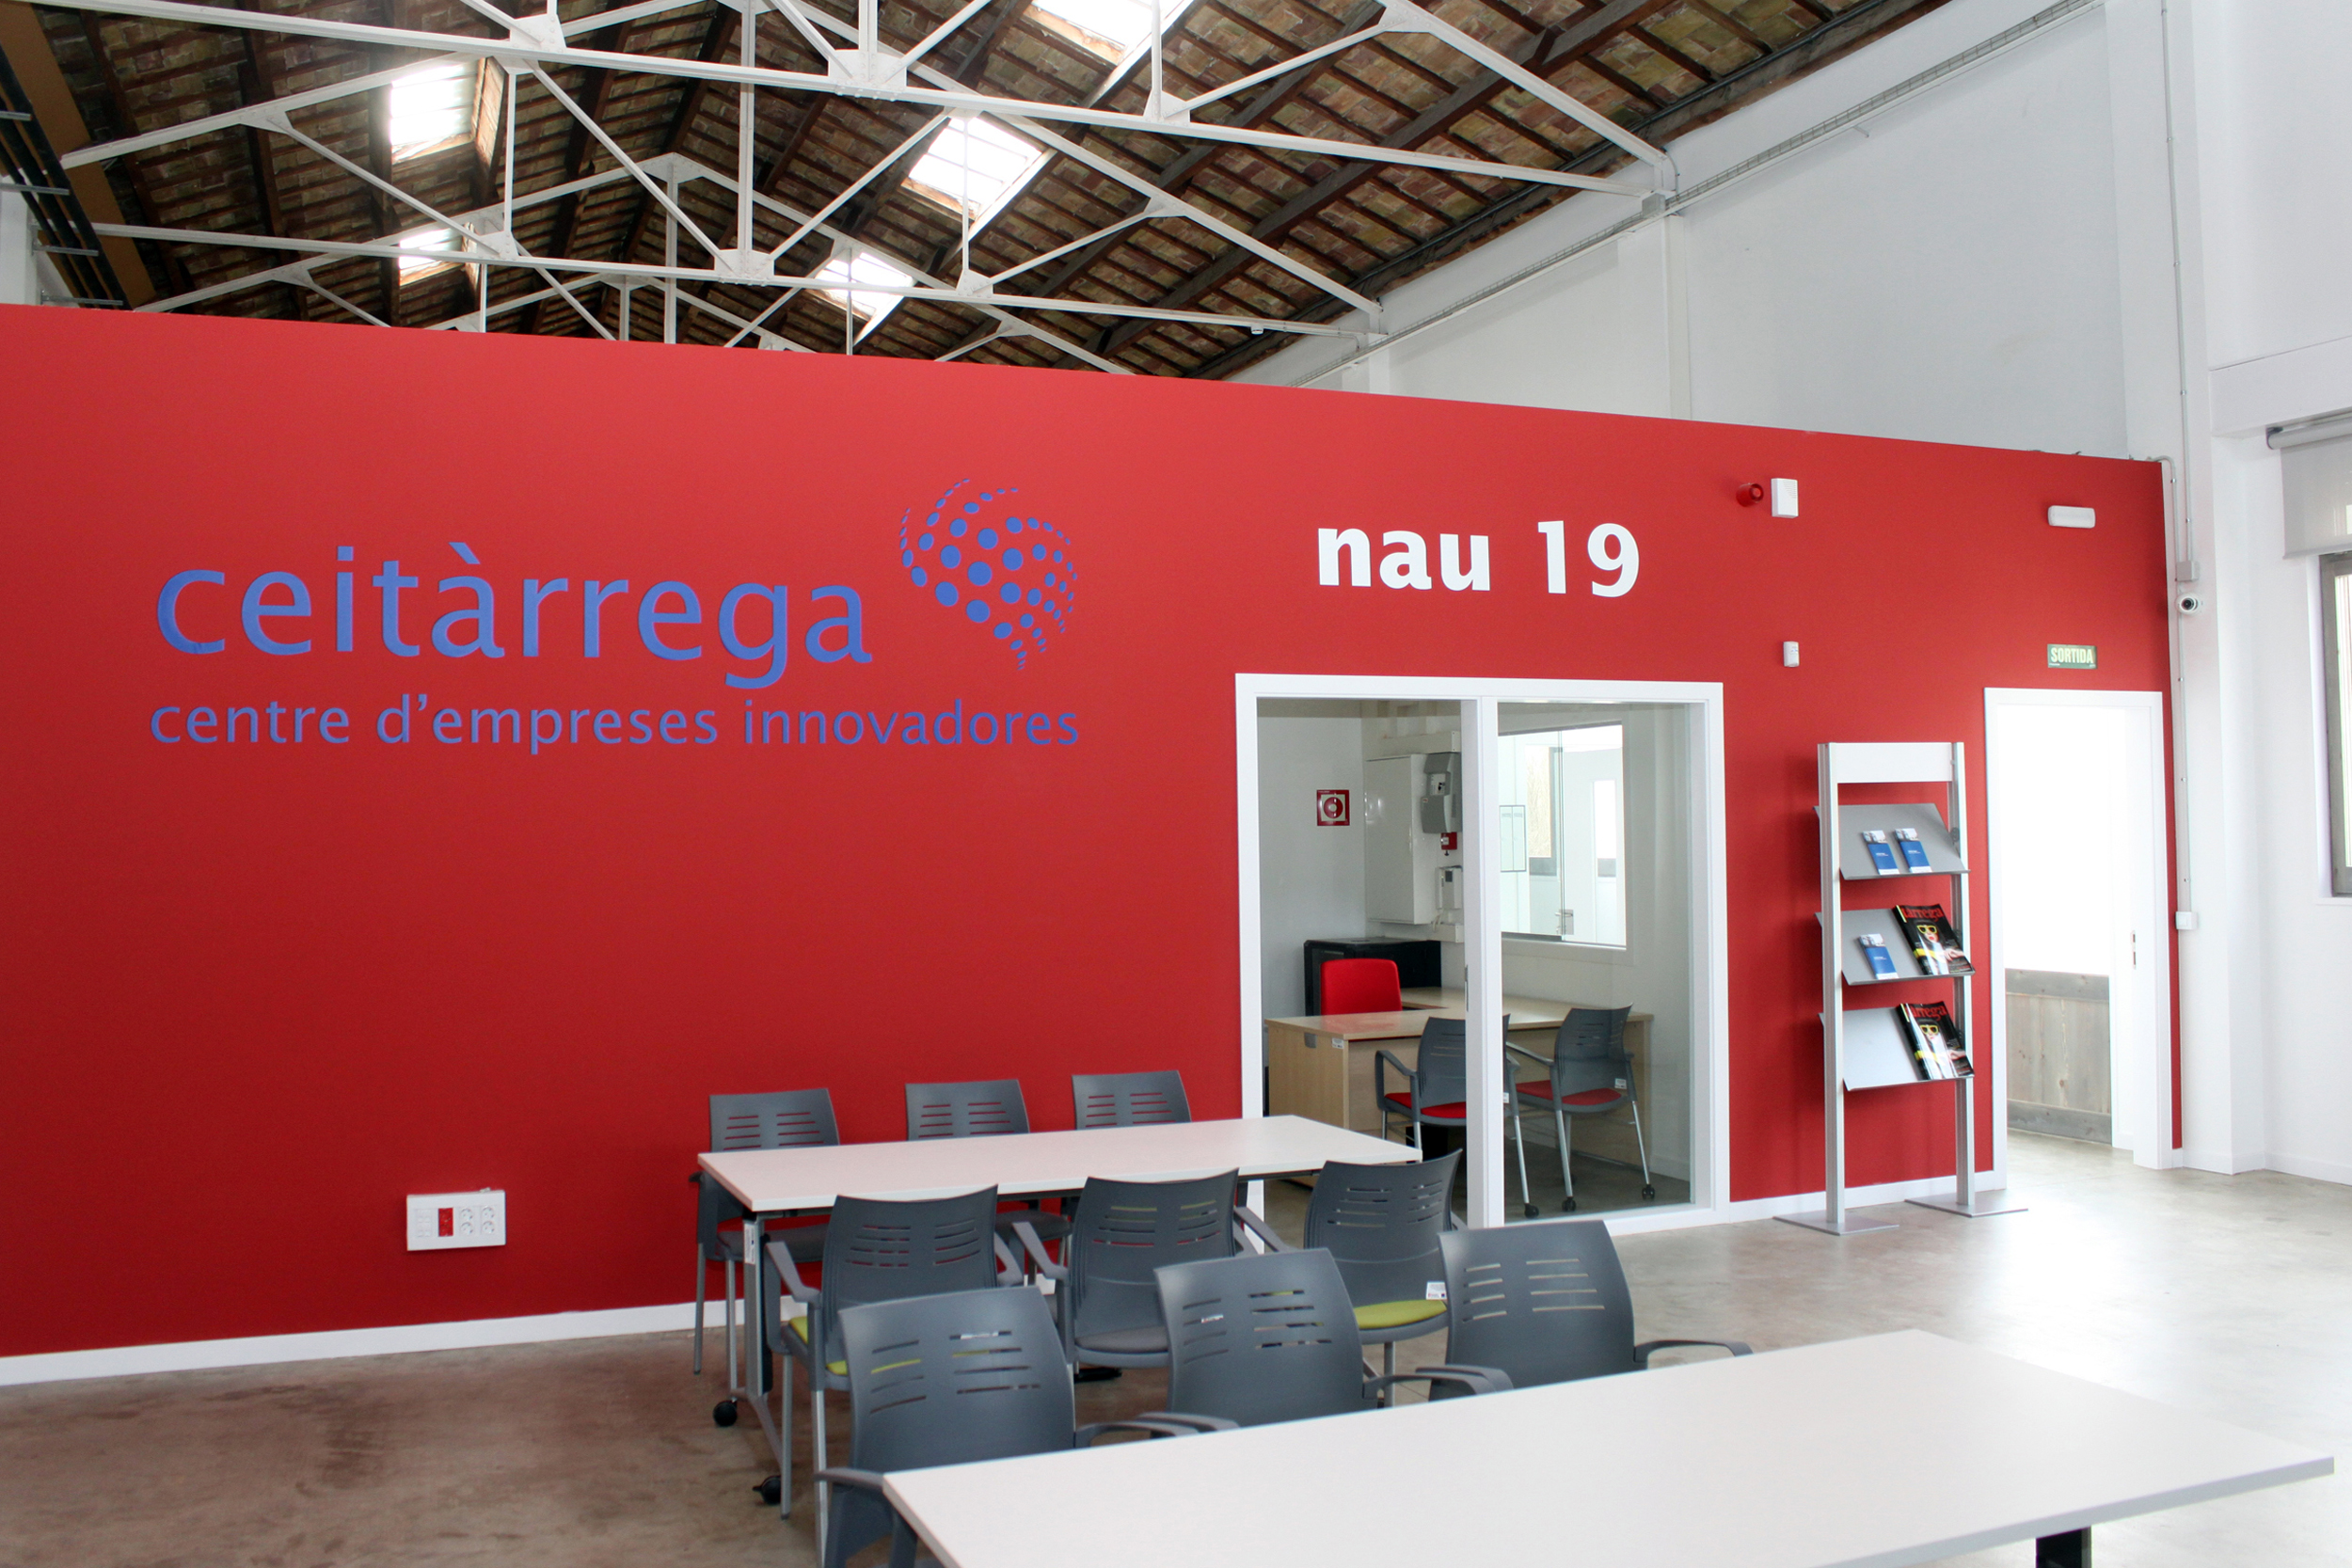 L’Ajuntament de Tàrrega posa en marxa el seu nou centre d’empreses innovadores a la nau 19 de Cal Trepat